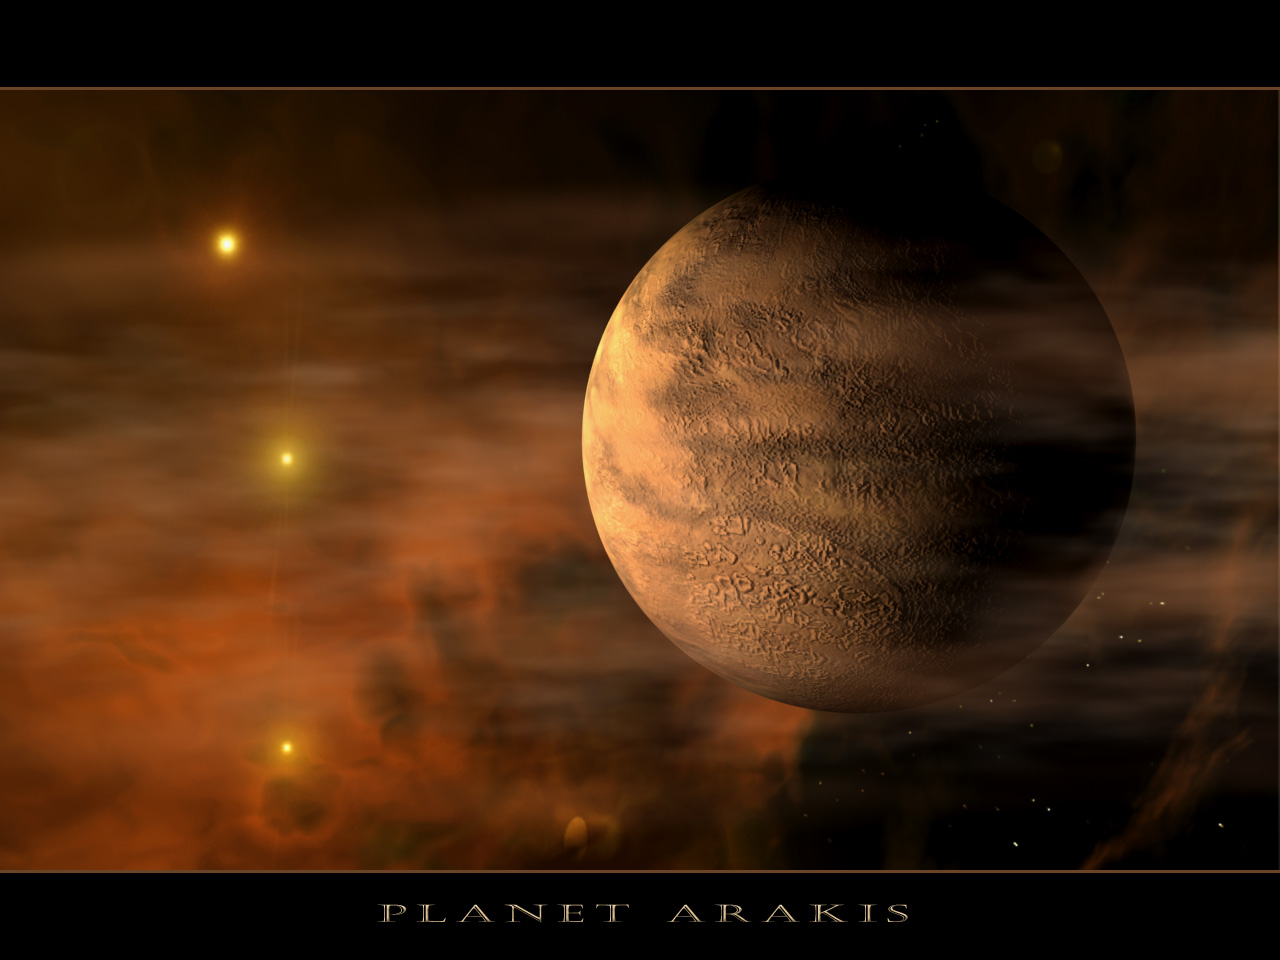 Fond d'ecran Planete Arakis